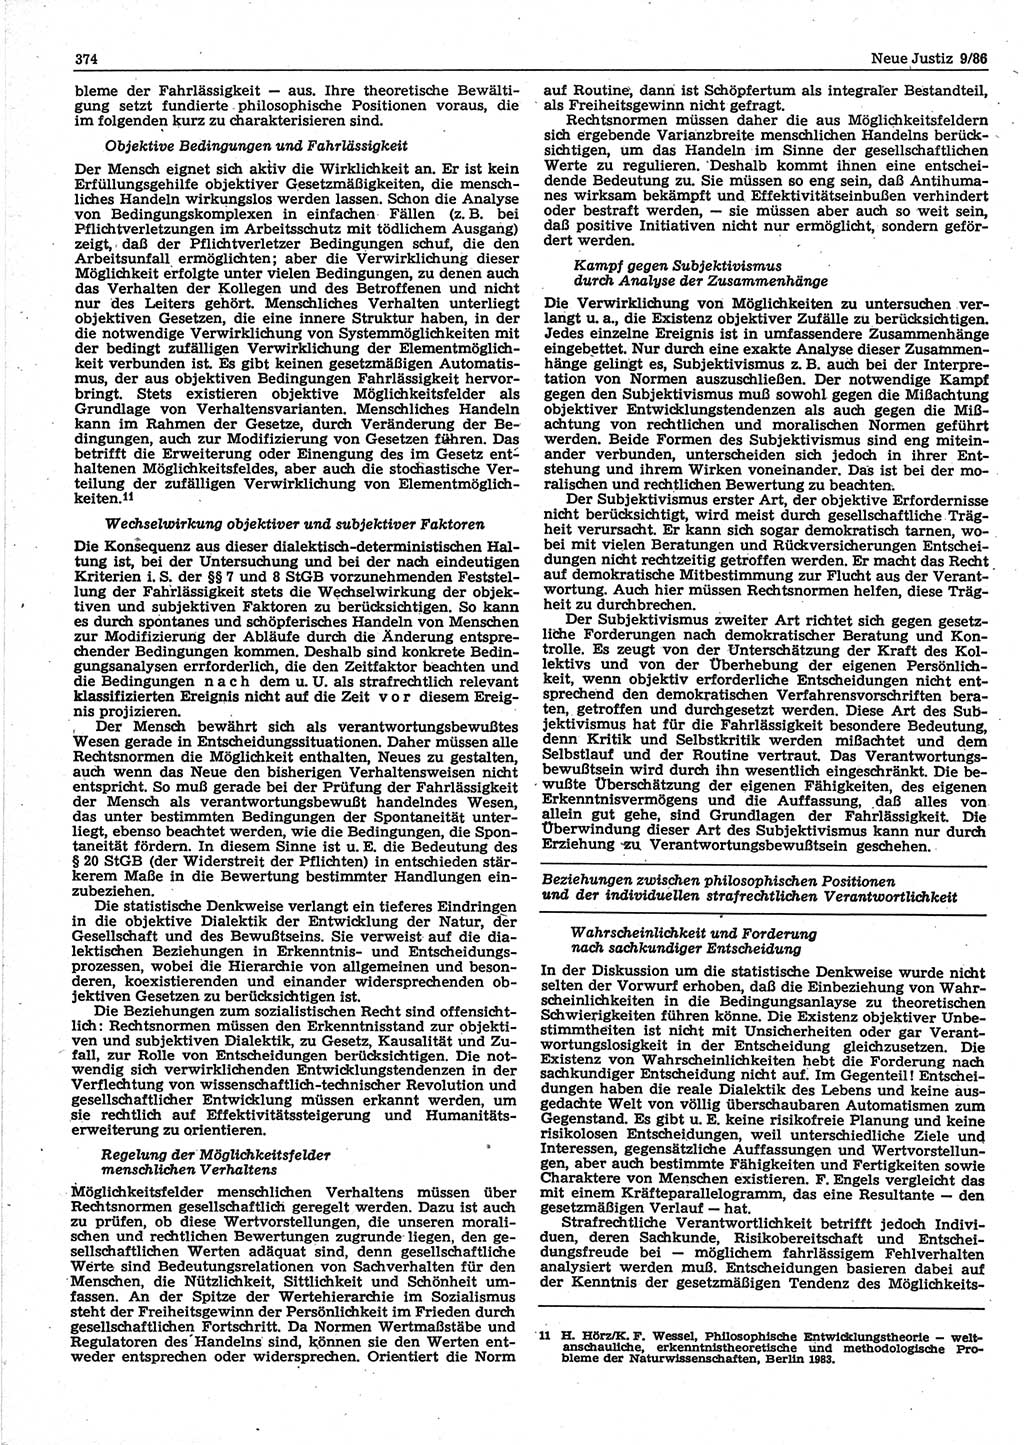 Neue Justiz (NJ), Zeitschrift für sozialistisches Recht und Gesetzlichkeit [Deutsche Demokratische Republik (DDR)], 40. Jahrgang 1986, Seite 374 (NJ DDR 1986, S. 374)